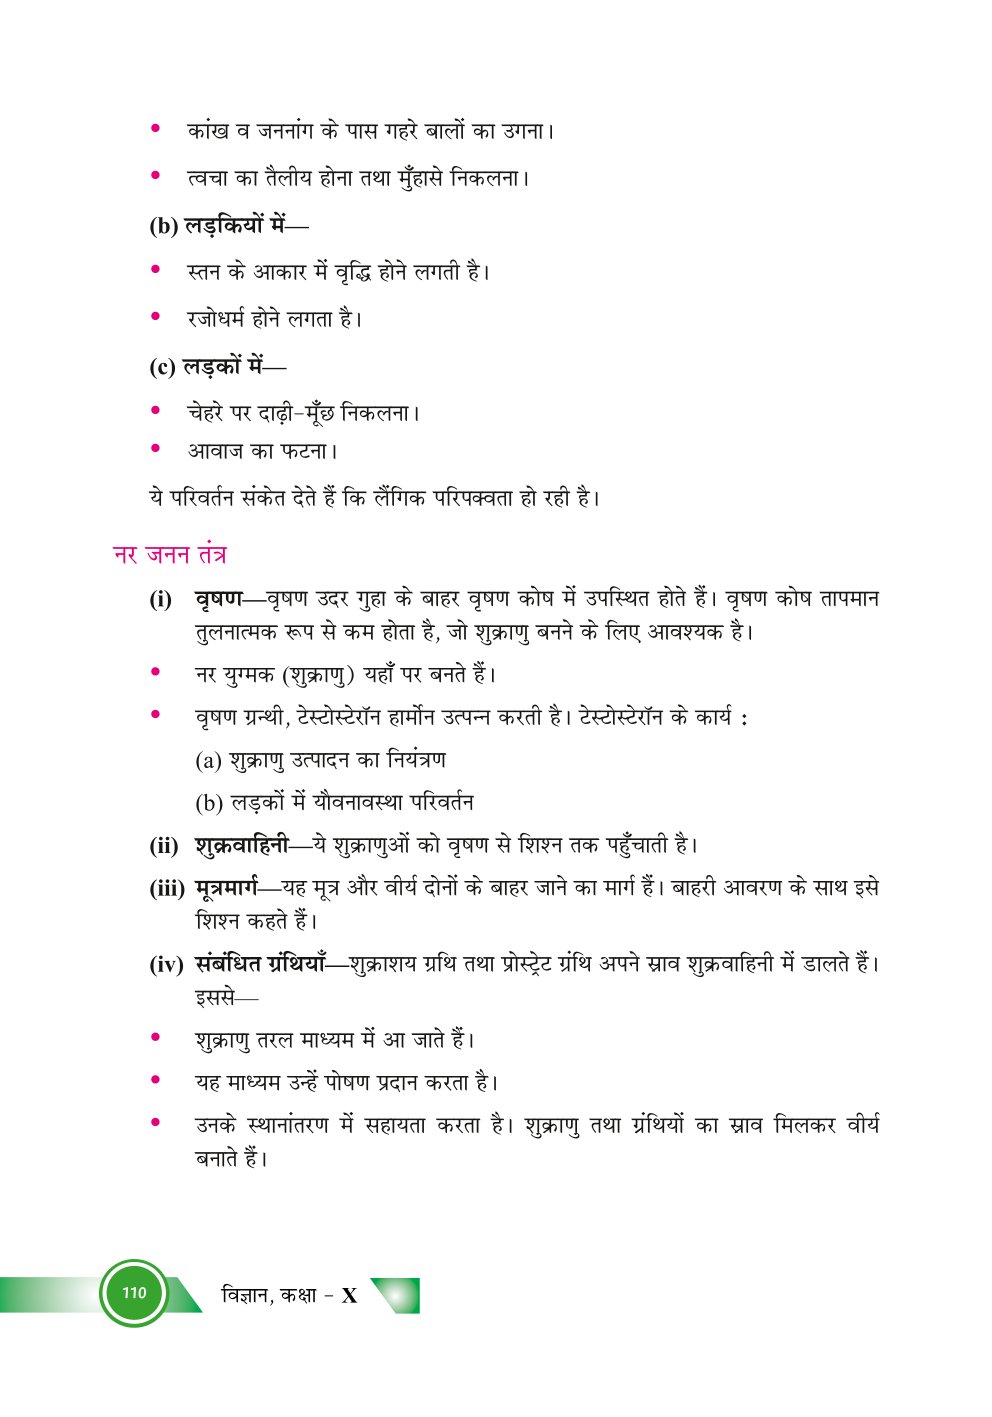 Bihar Board Class 10th Biology  How do Organisms Reproduce  Class 10 Biology Rivision Notes PDF  जीव जनन कैसे करते है  बिहार बोर्ड क्लास 10वीं जीवविज्ञान नोट्स  कक्षा 10 जीवविज्ञान हिंदी में नोट्स